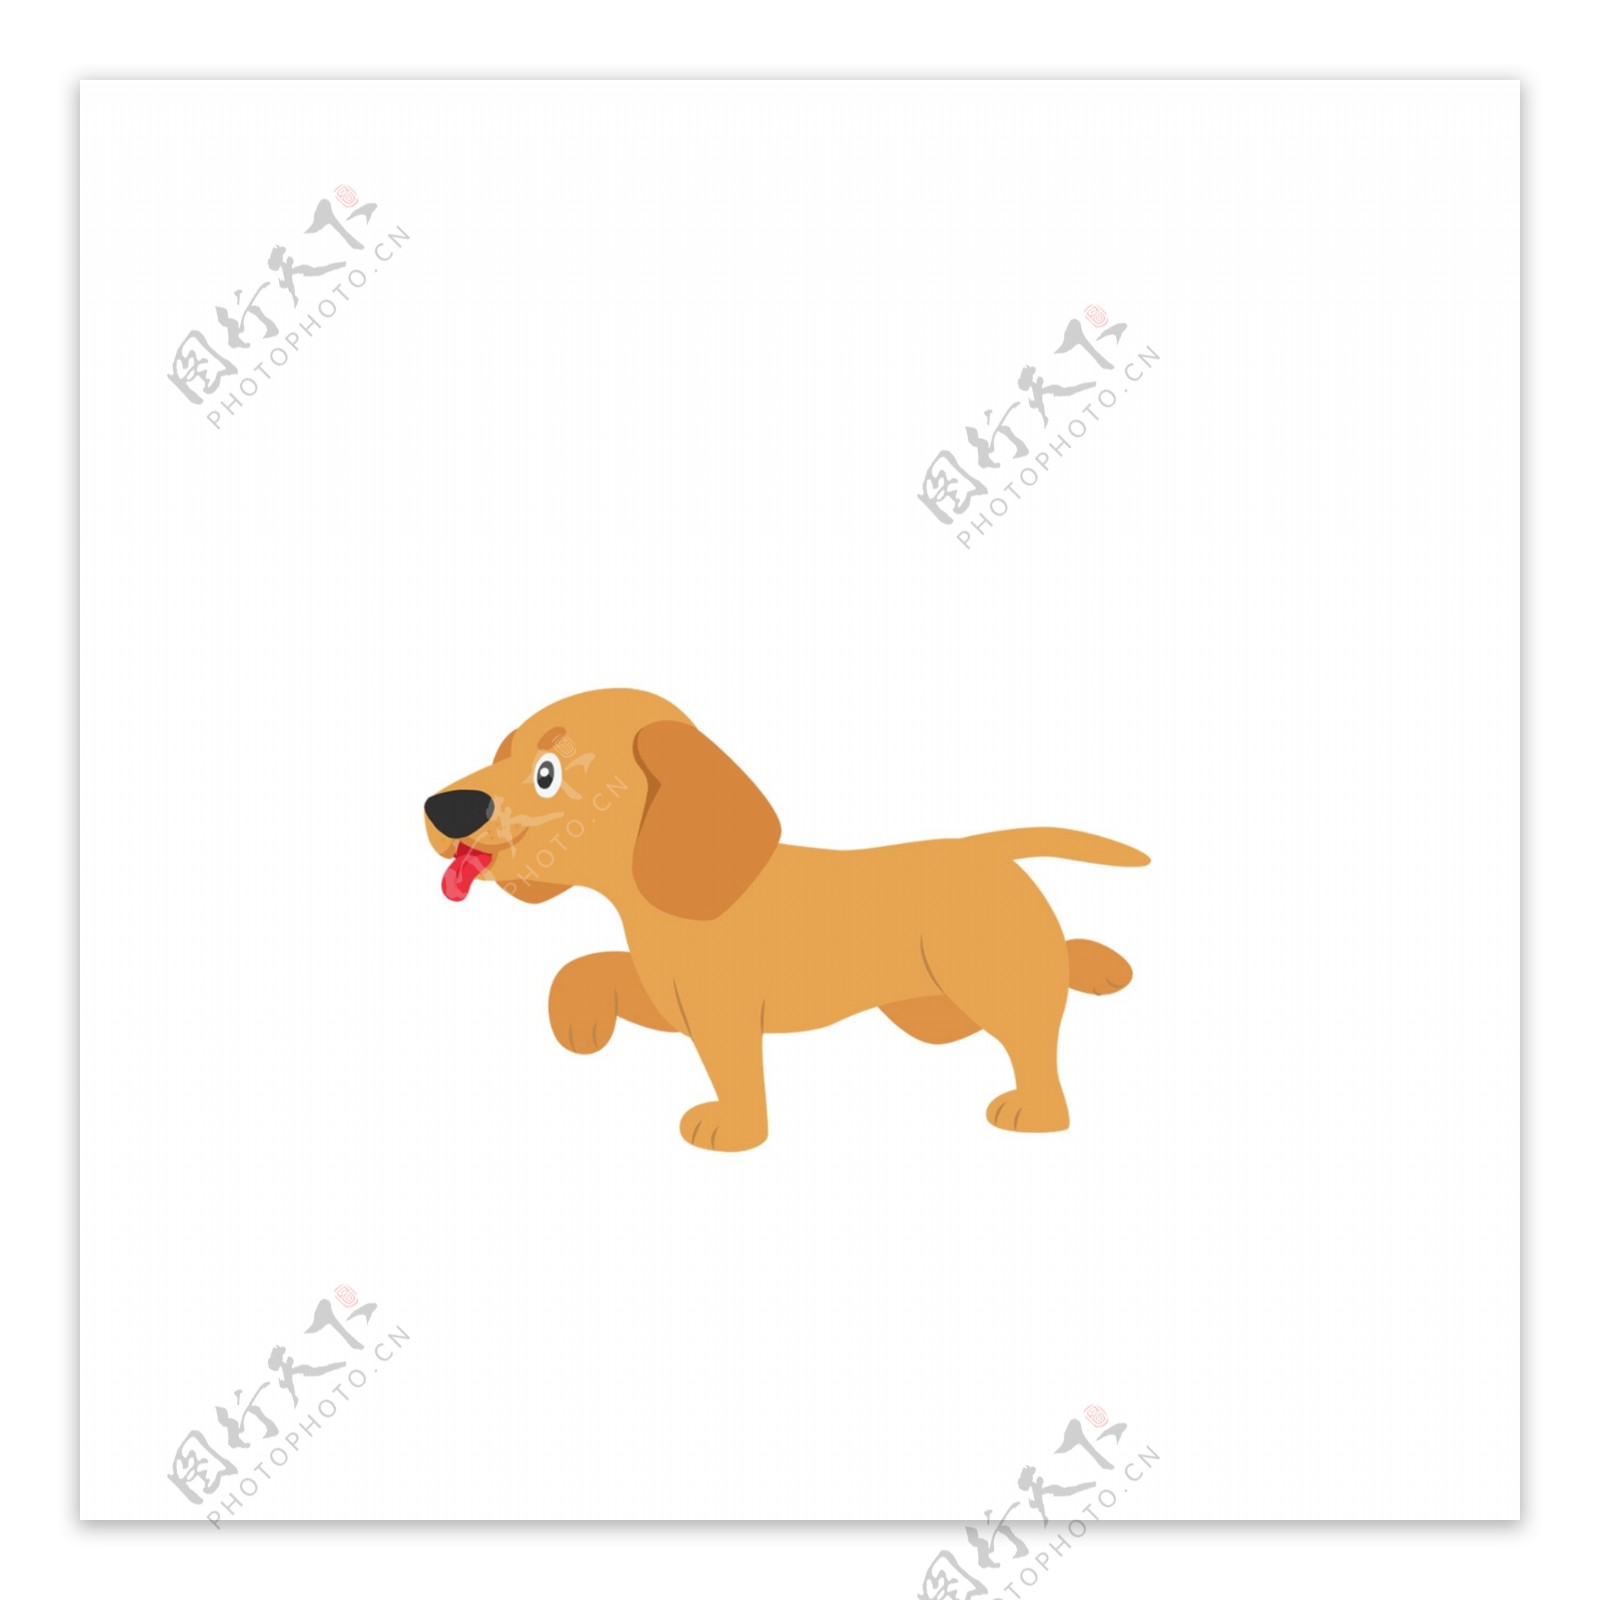 可爱奔跑的狗子插画设计可商用元素